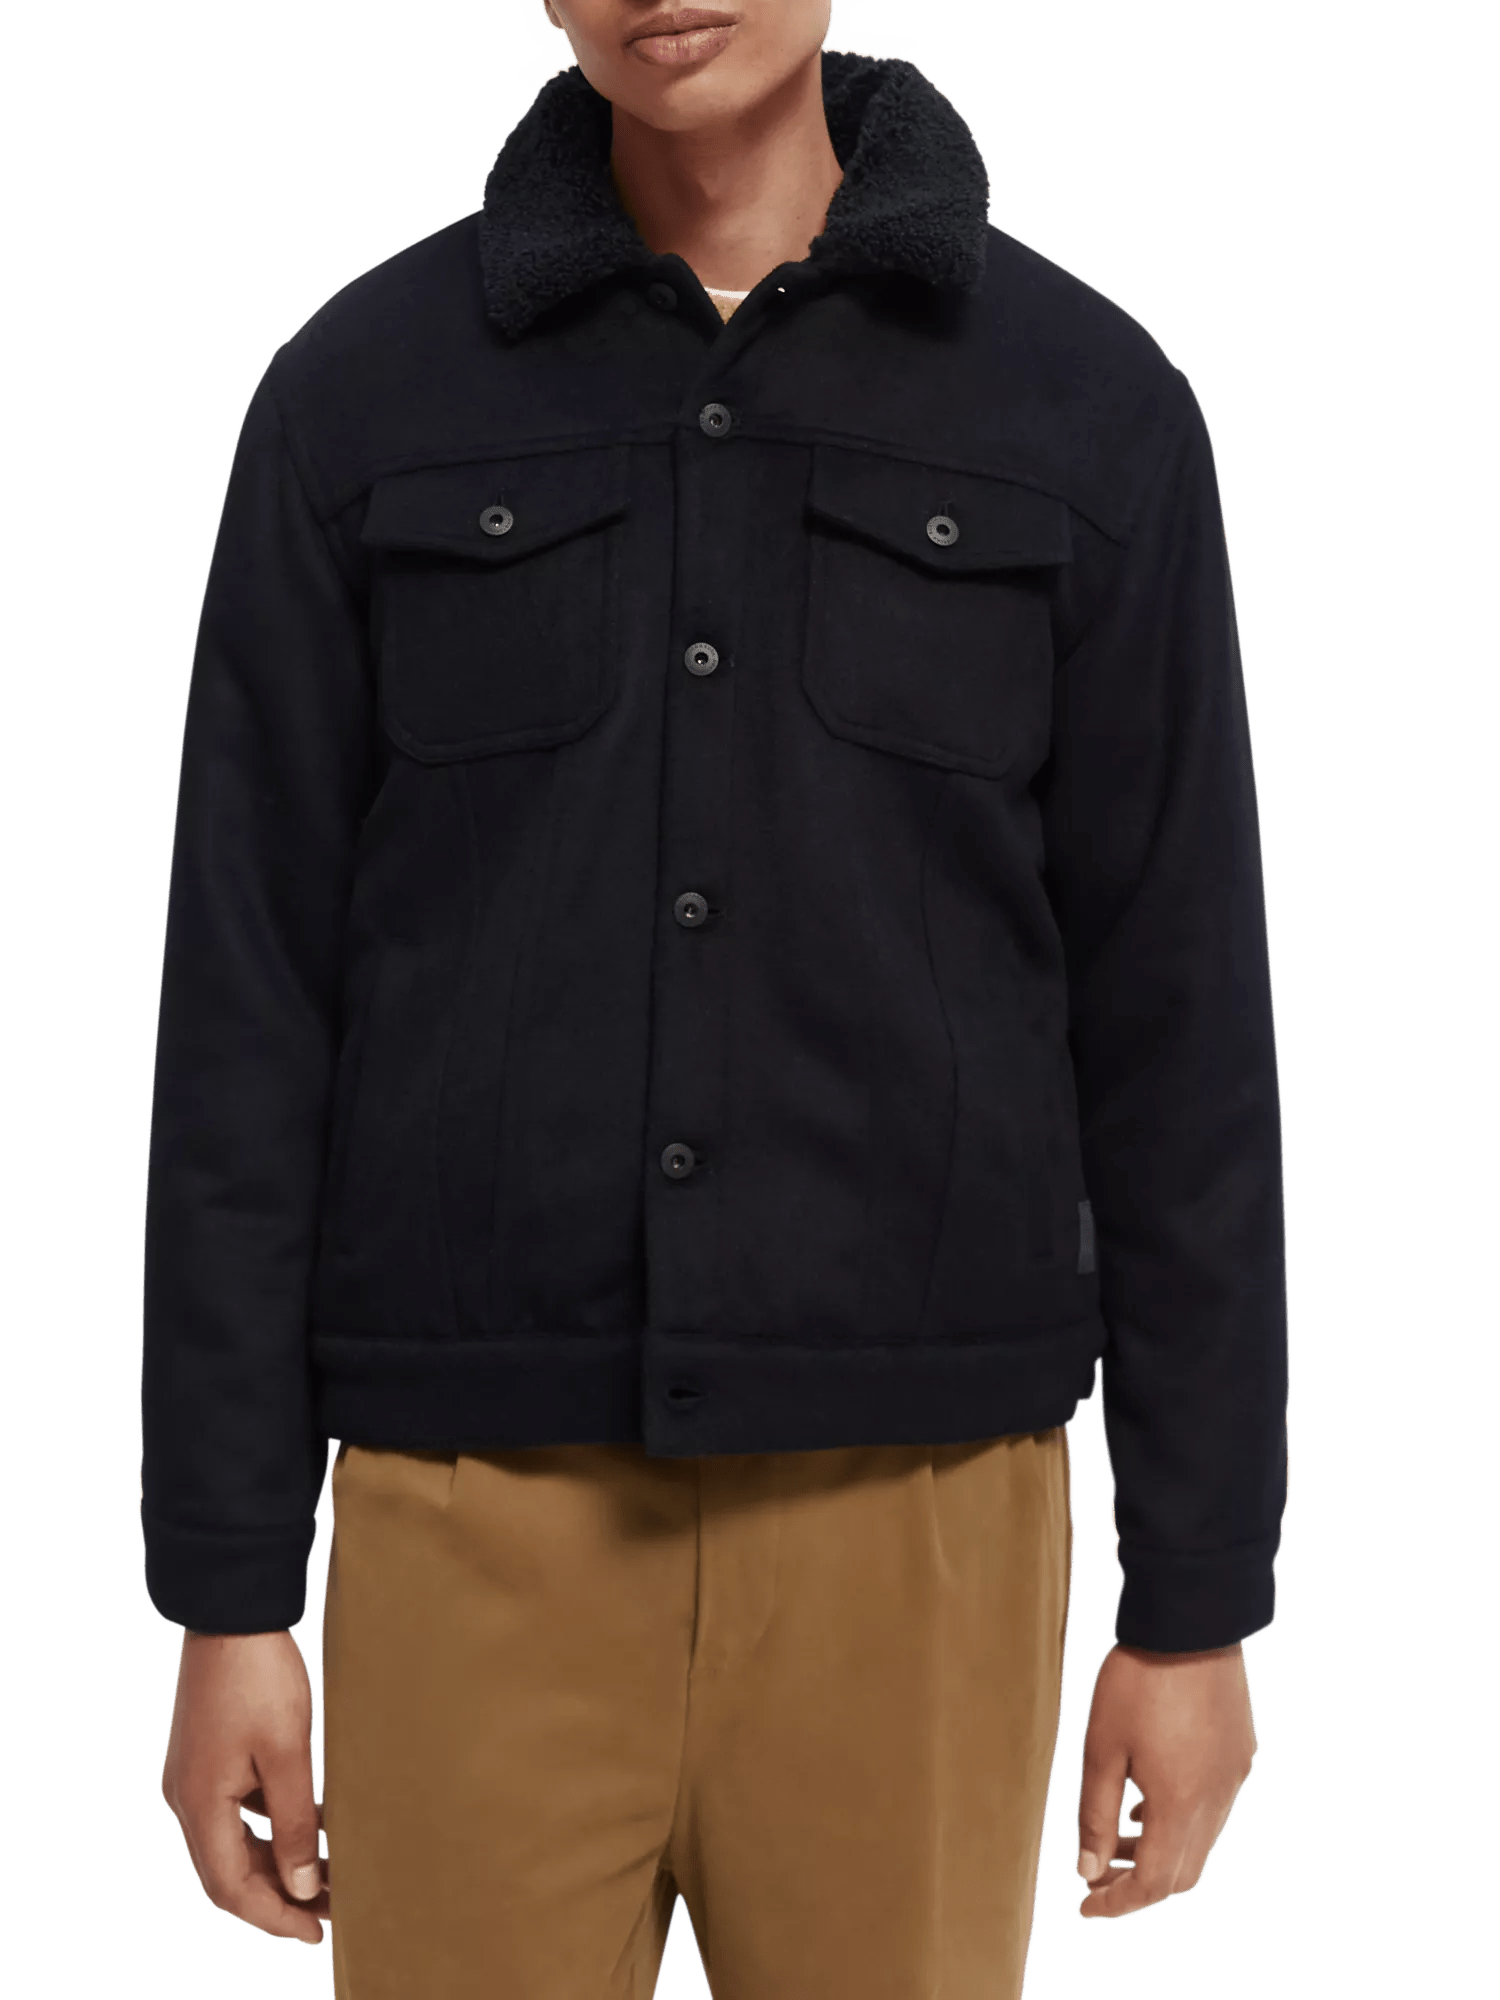 Sherpa-lined trucker jacket